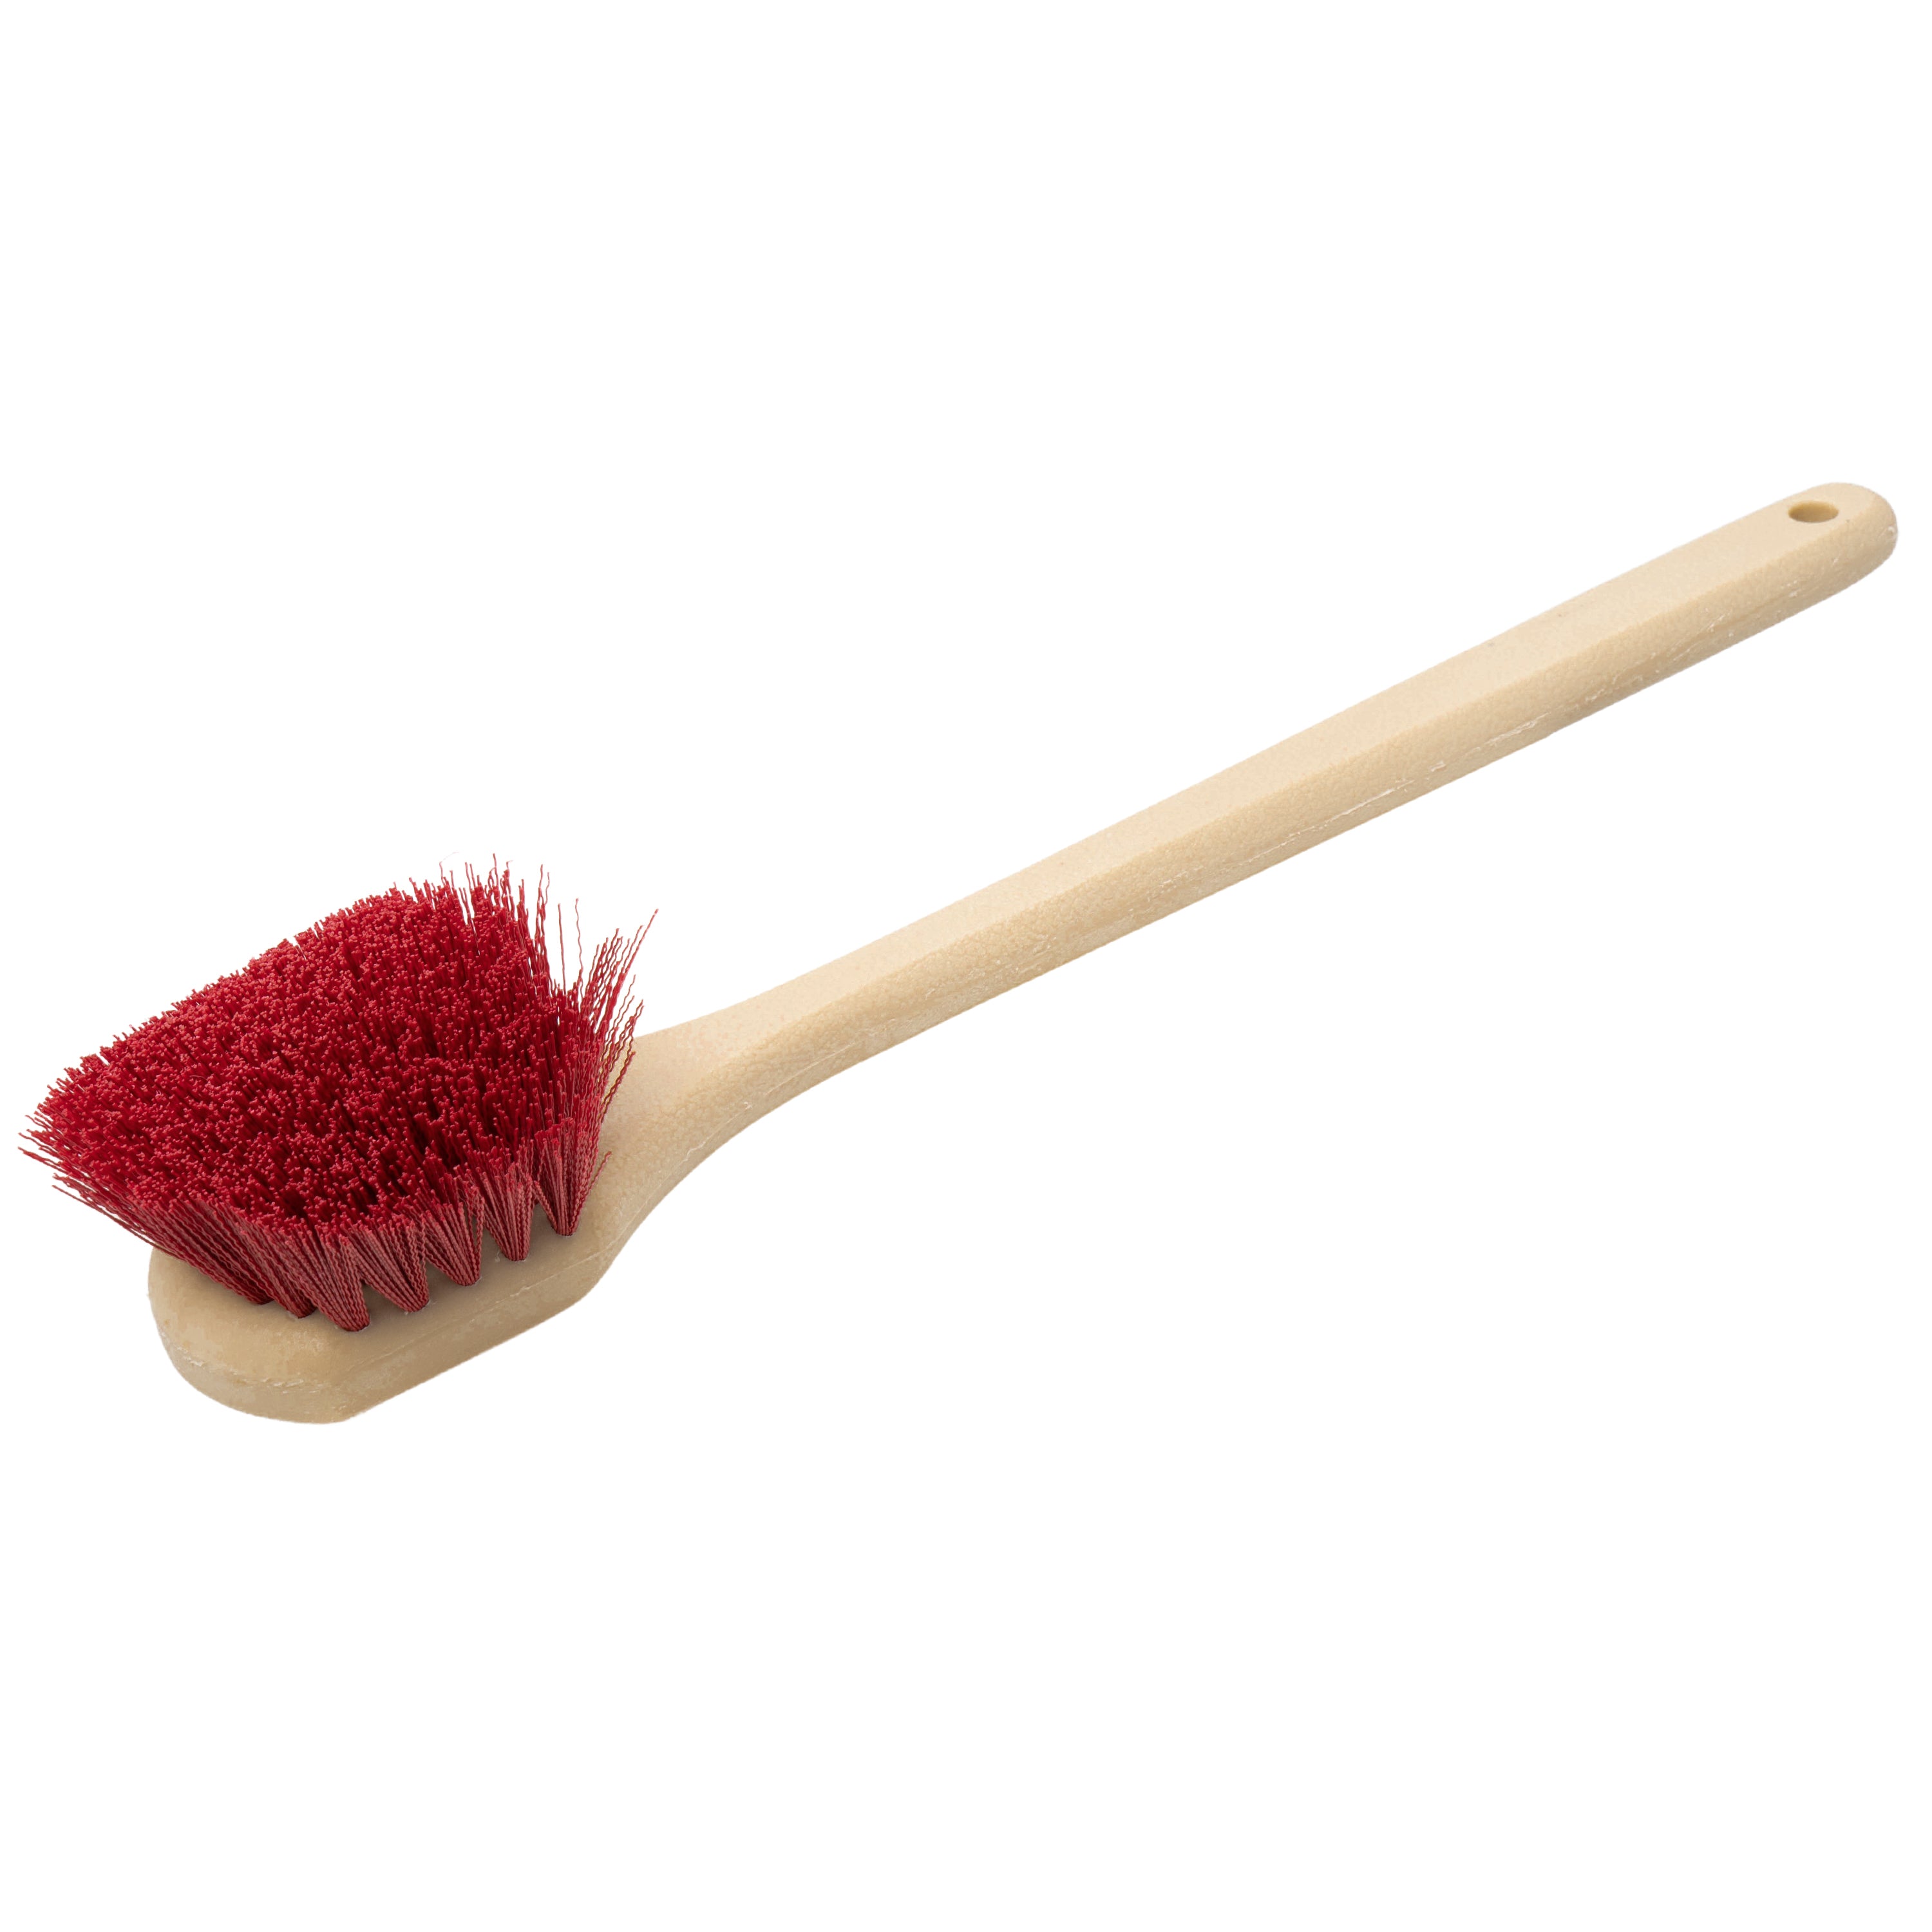 Allway Long Handle Scrub Brush